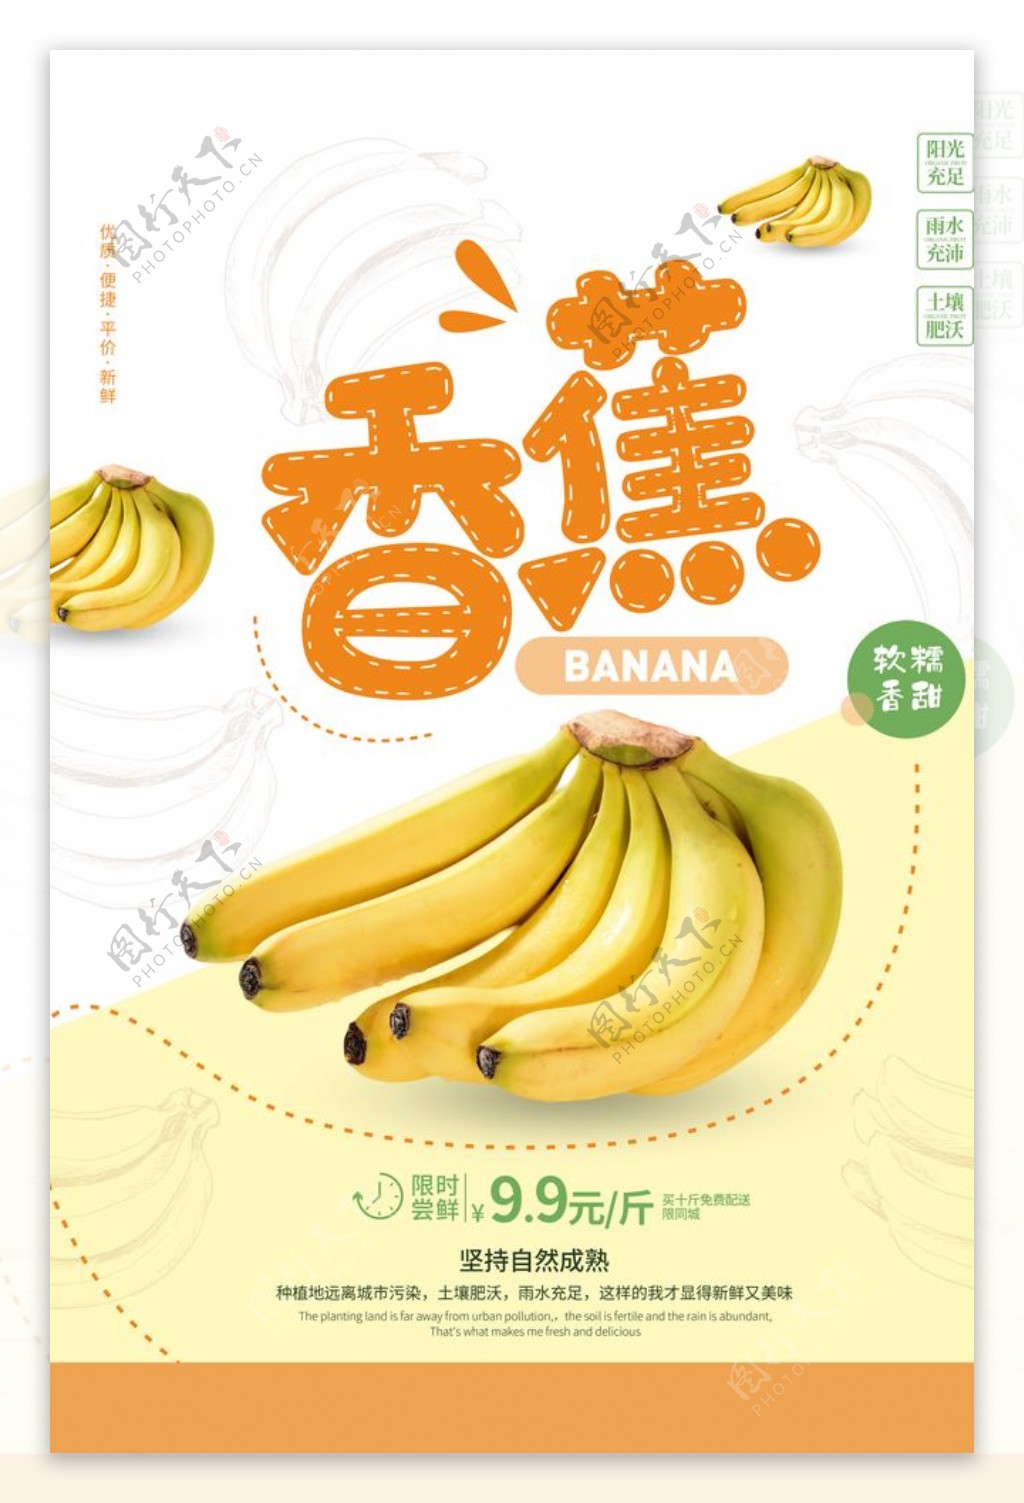 香蕉水果活动宣传海报素材图片